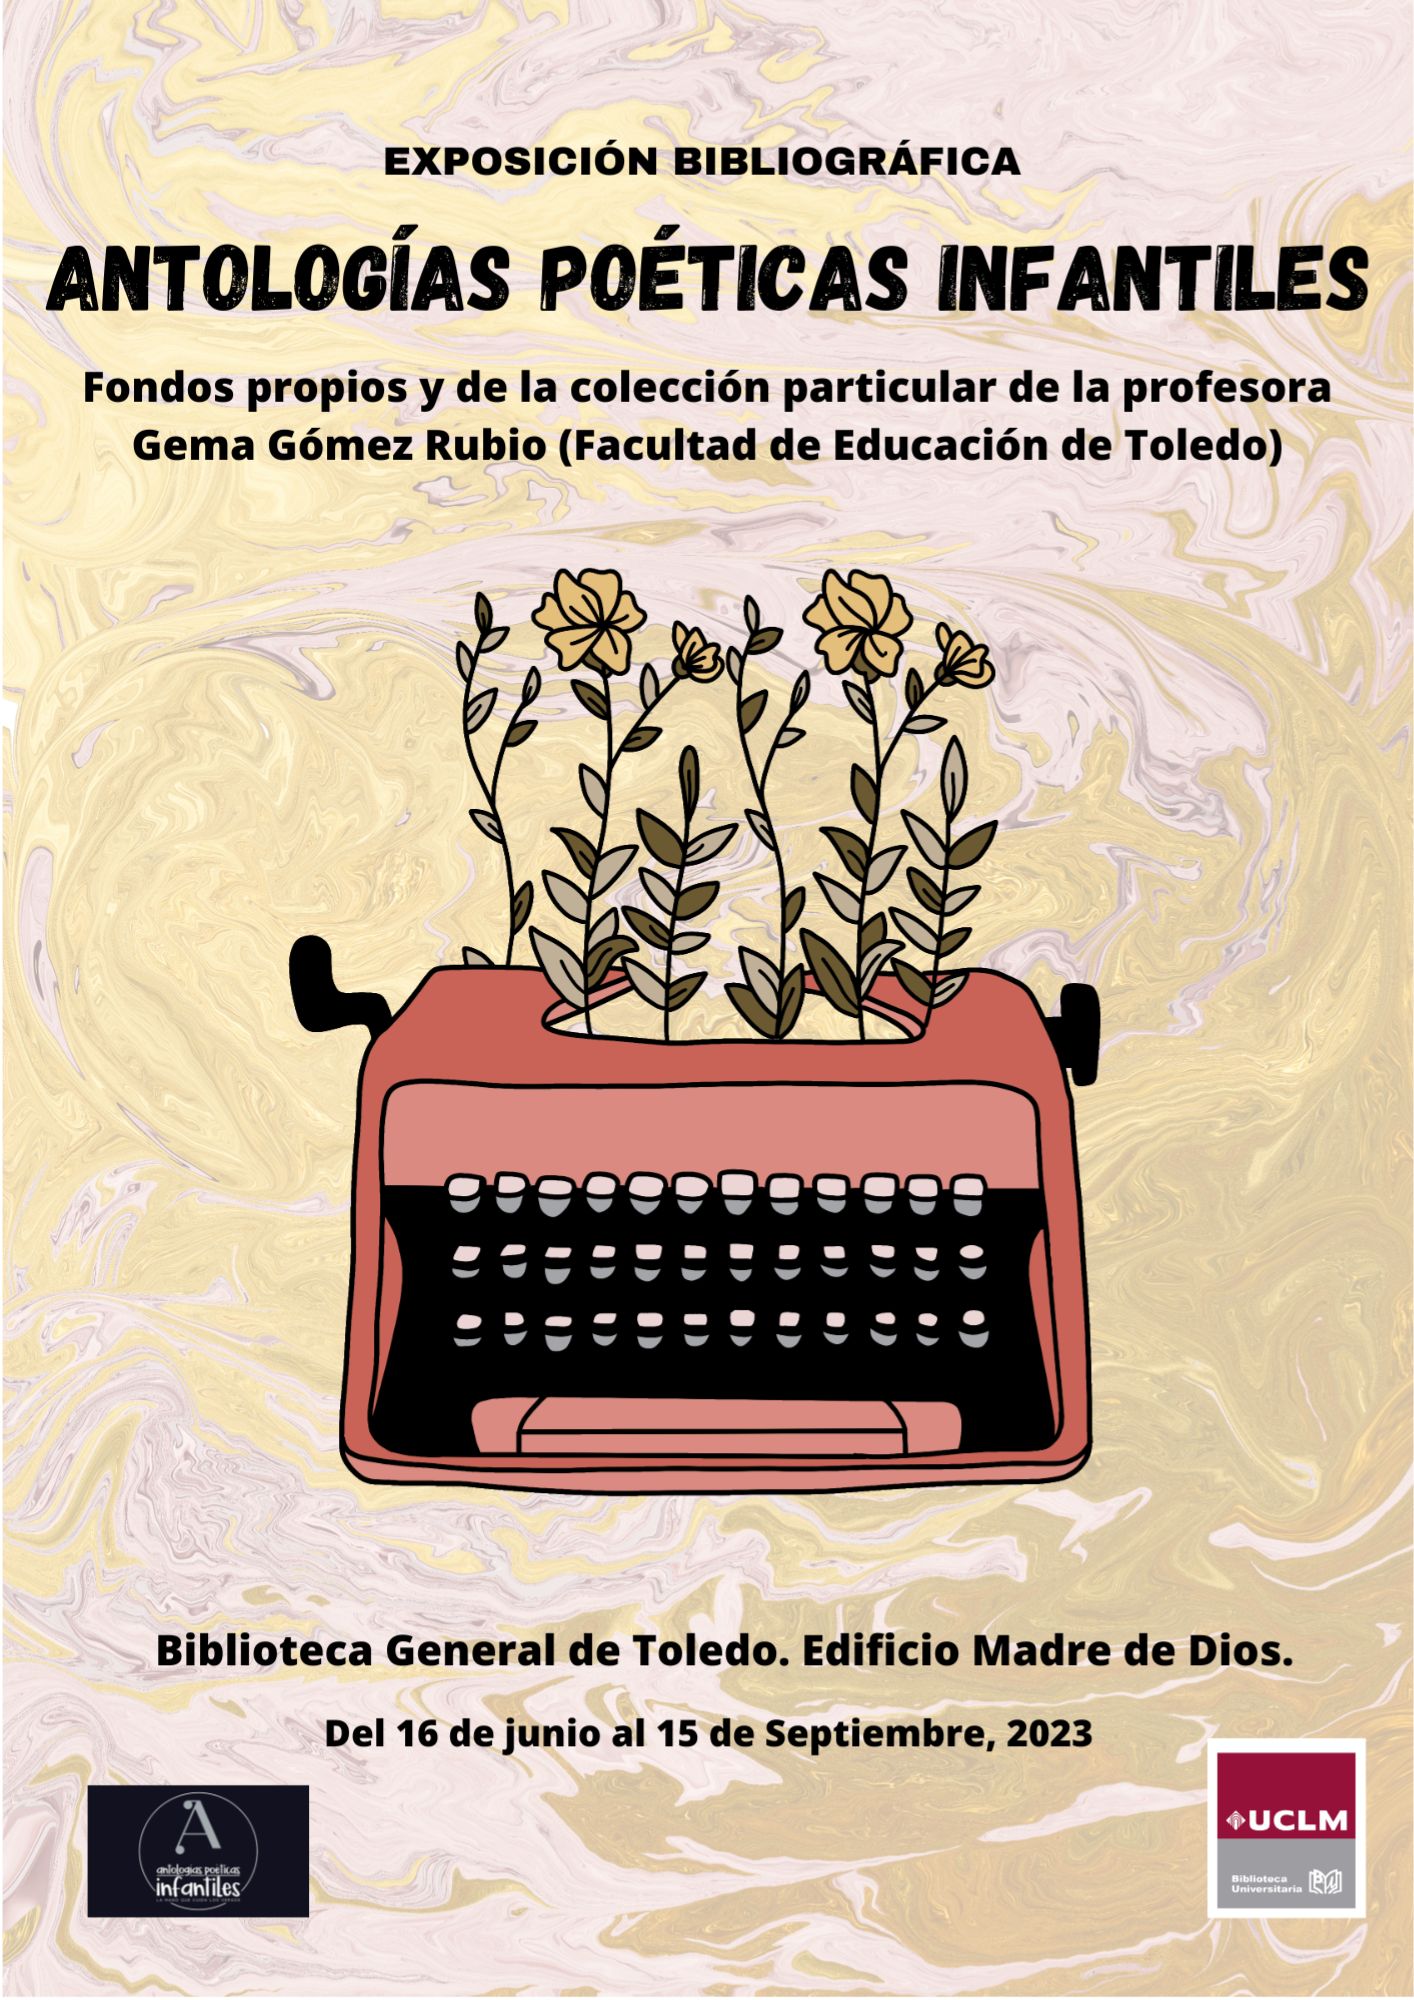 Exposición en la Biblioteca General del campus de Toledo